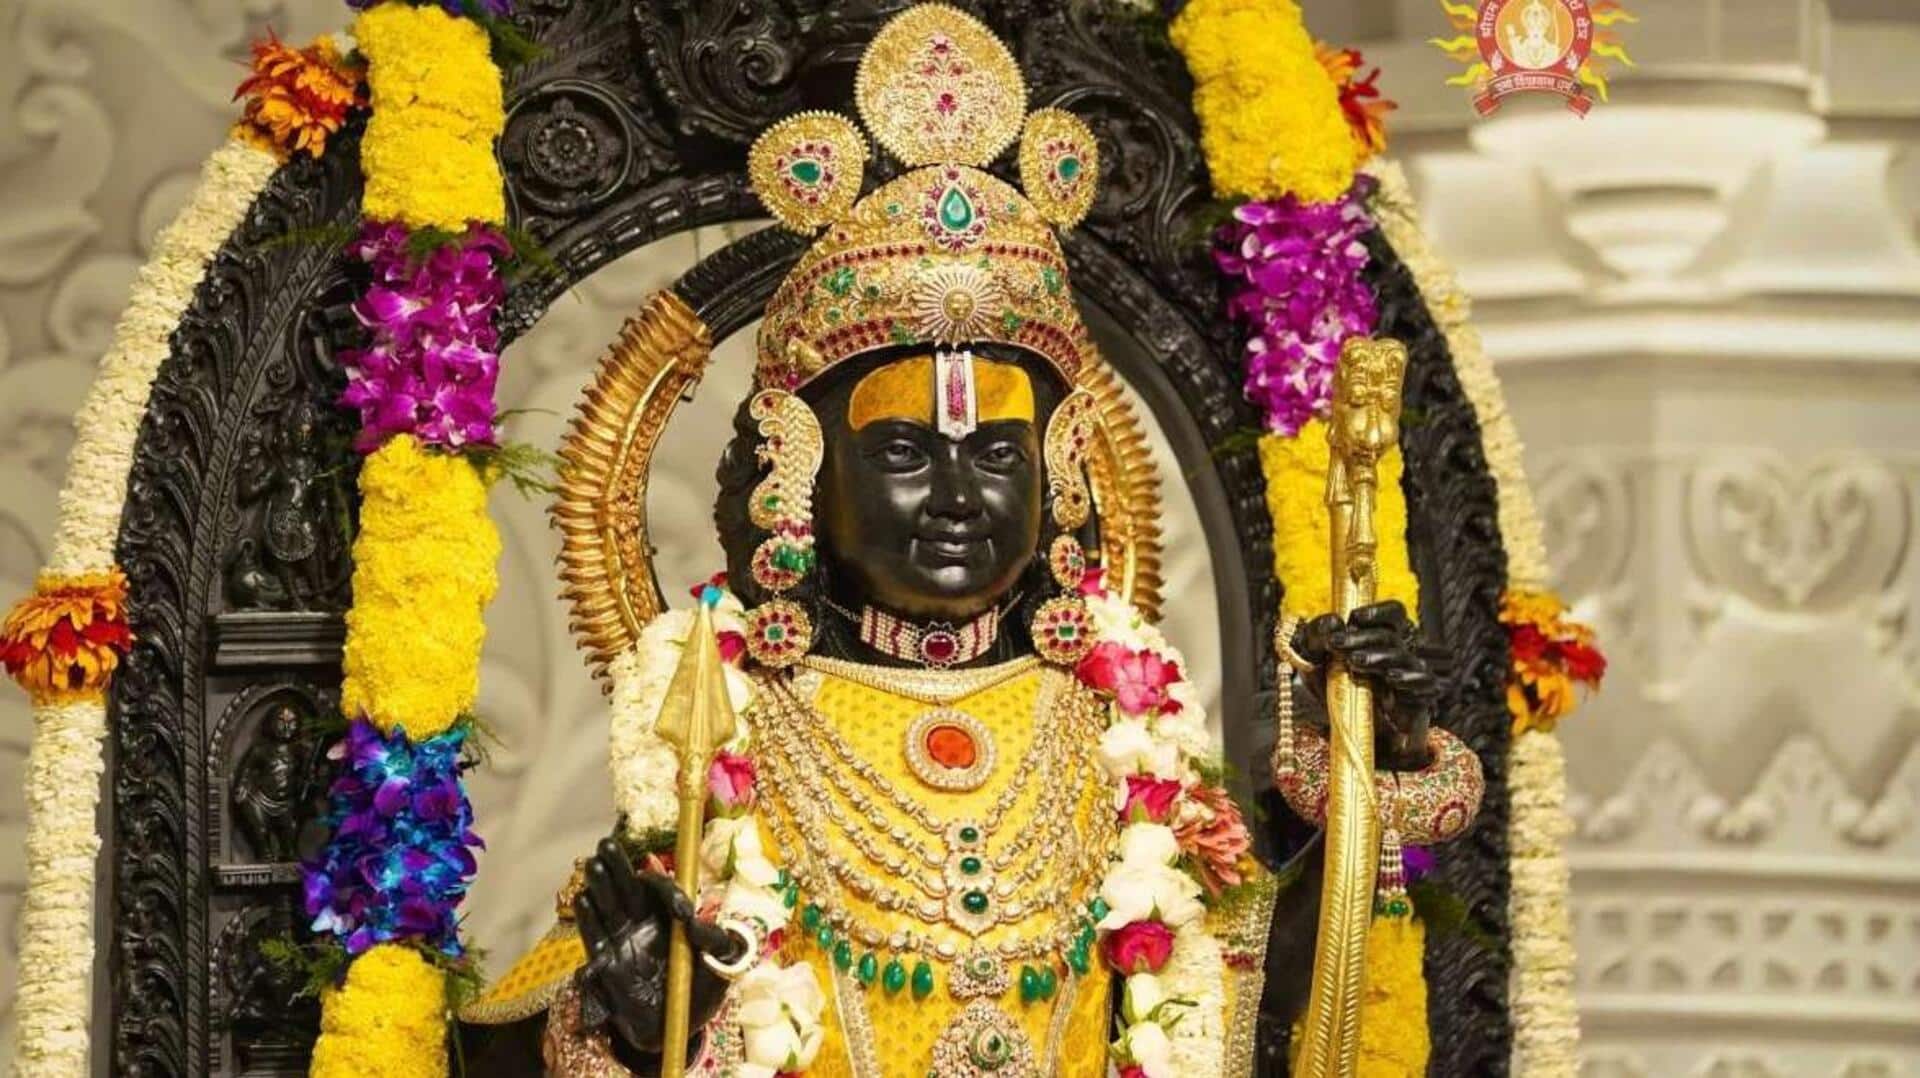 ராம நவமி அன்று, ராமர் கோவிலில் விஞ்ஞான உதவியுடன் நடக்கவிருக்கும் ஆச்சரிய நிகழ்வு